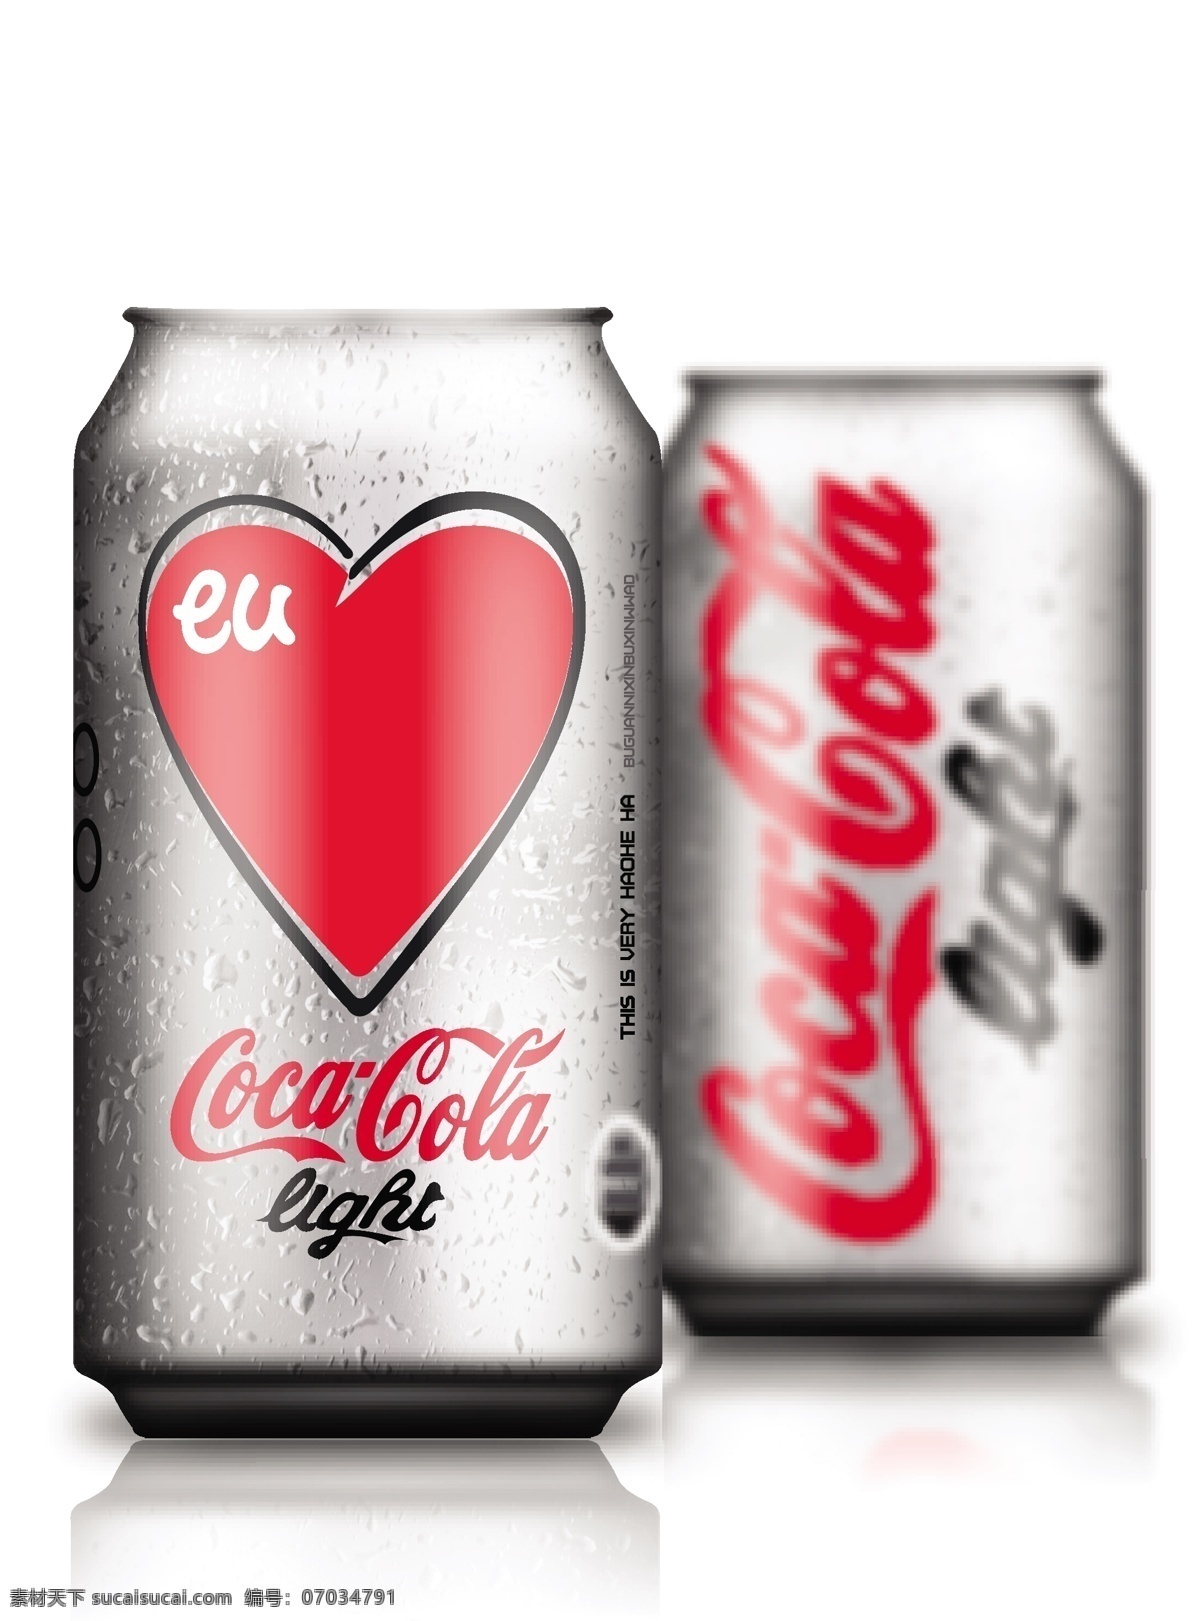 可口可乐 易拉罐 eps格式 可乐 矢量图 饮料 矢量 碳酸饮料 矢量人物